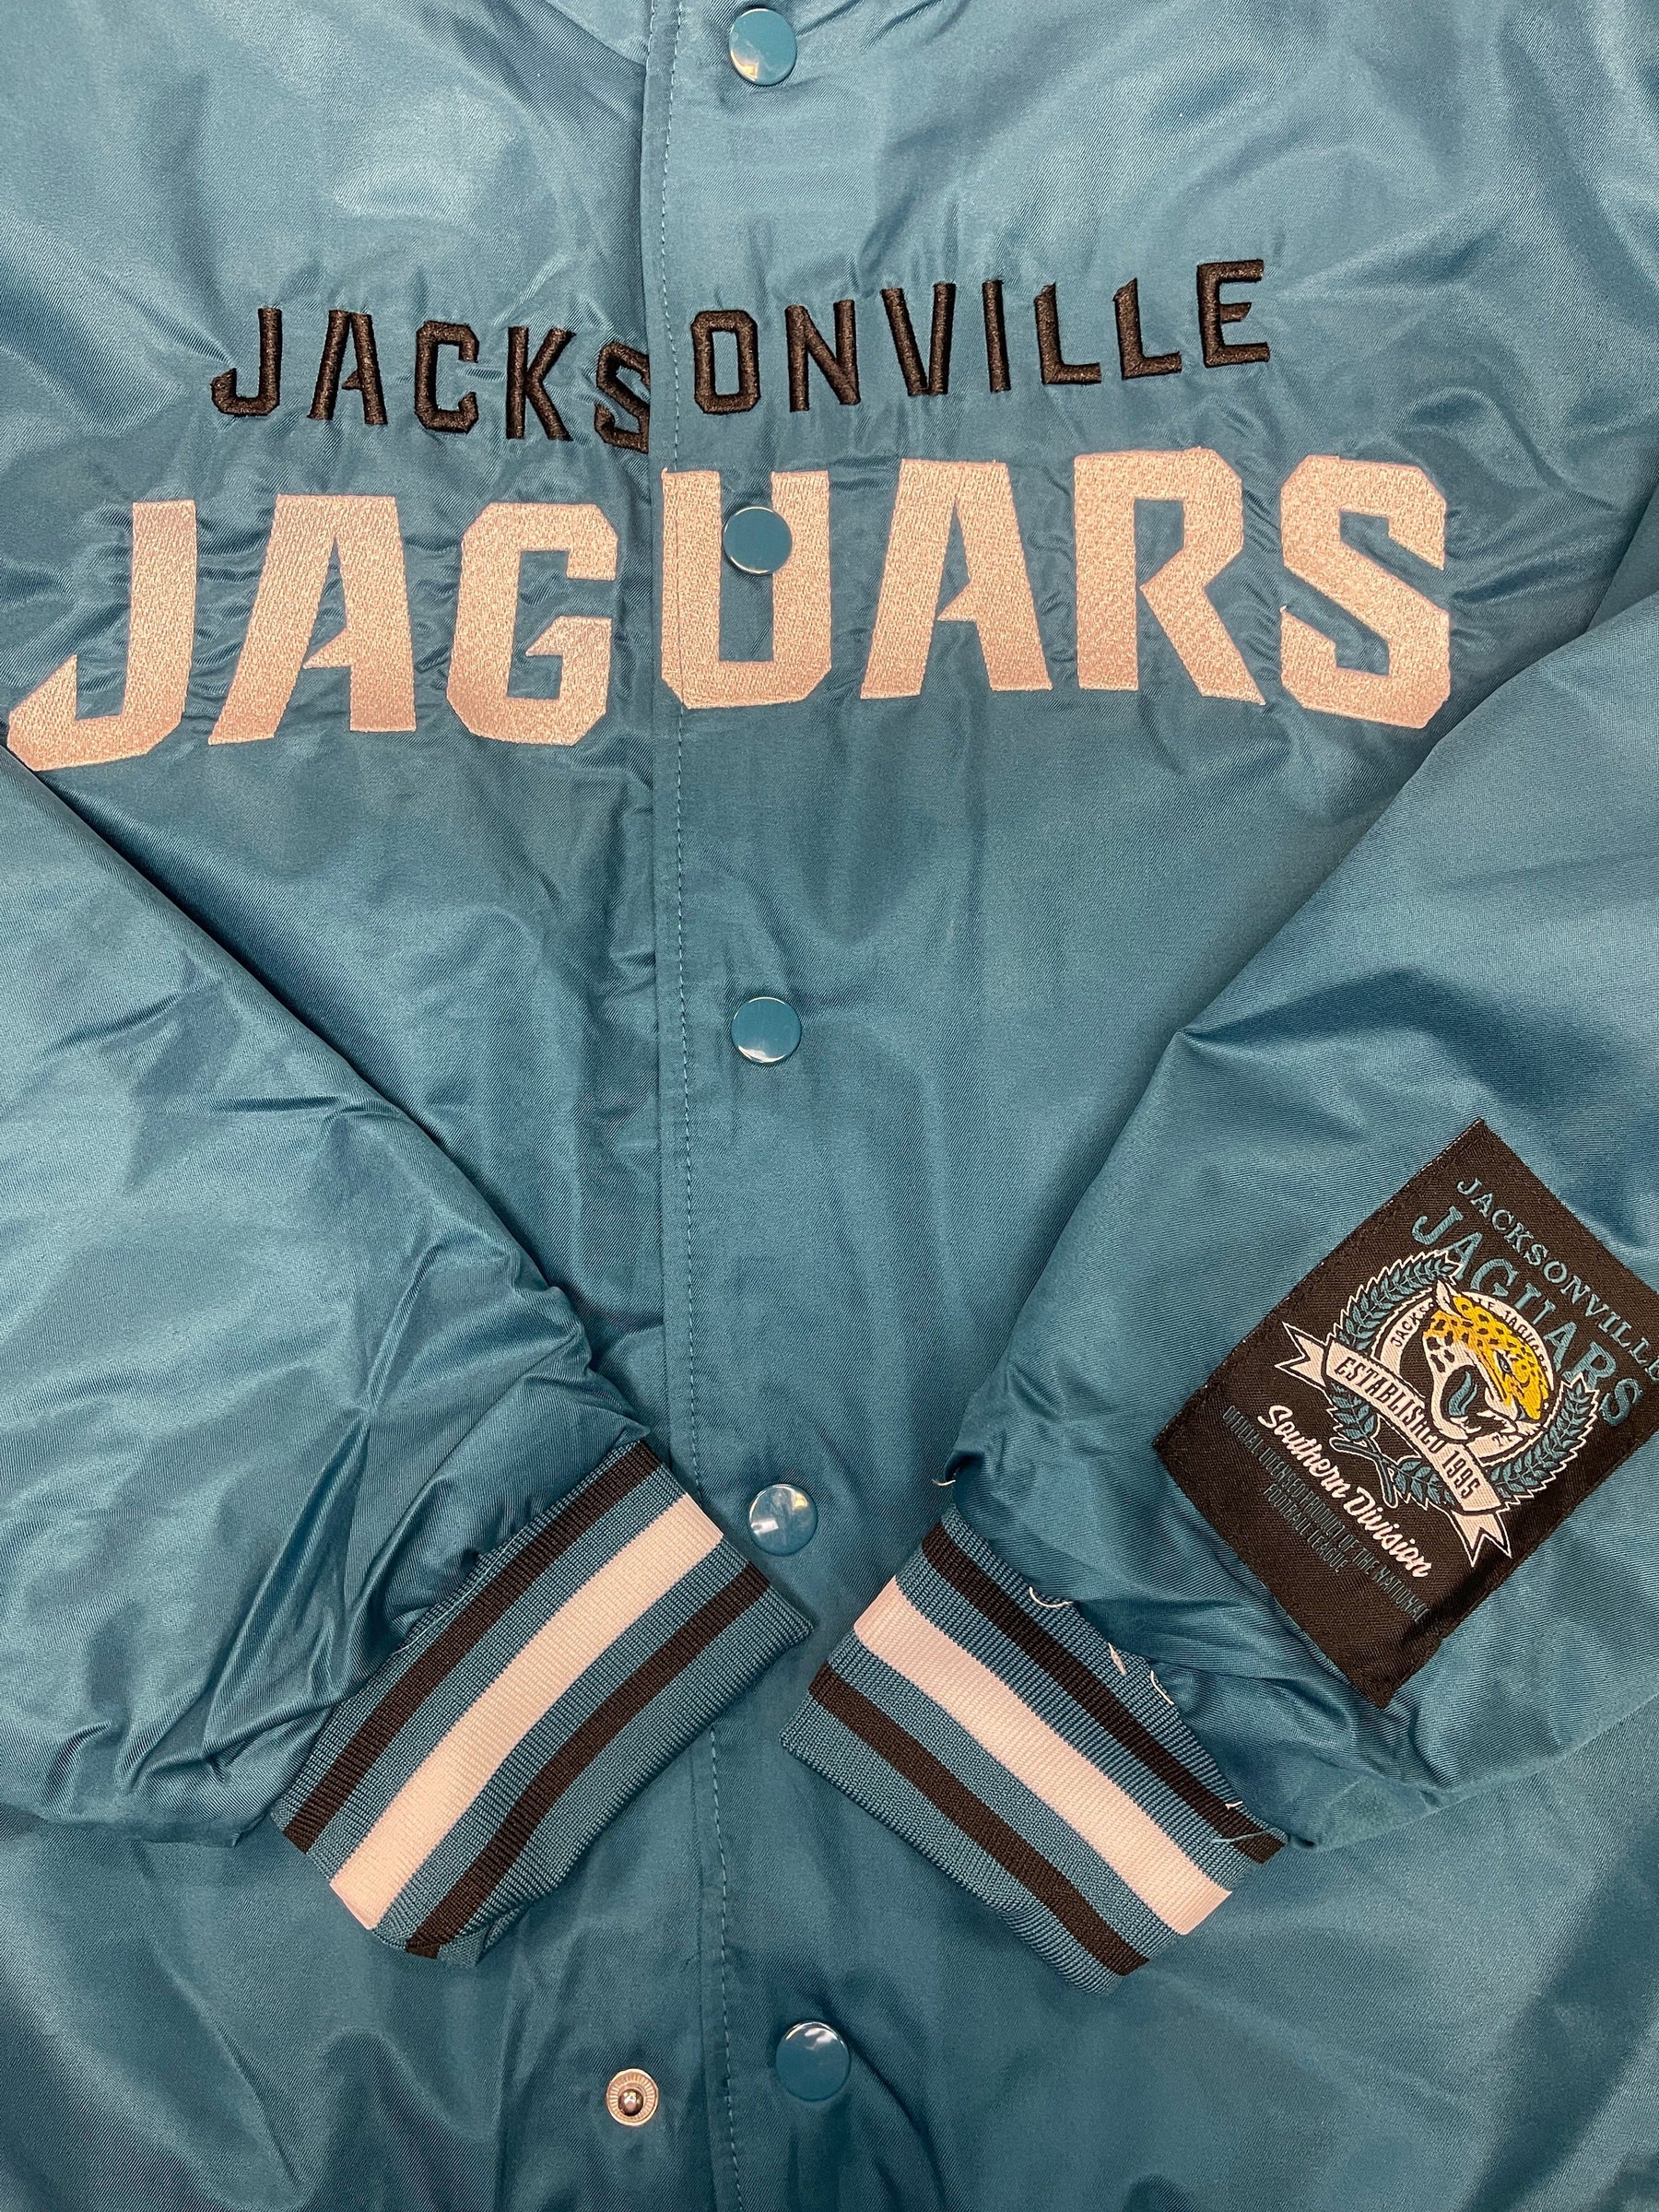 NFL Jacksonville Jaguars Quilted Satin Bomber Jacket Men's Medium NWT